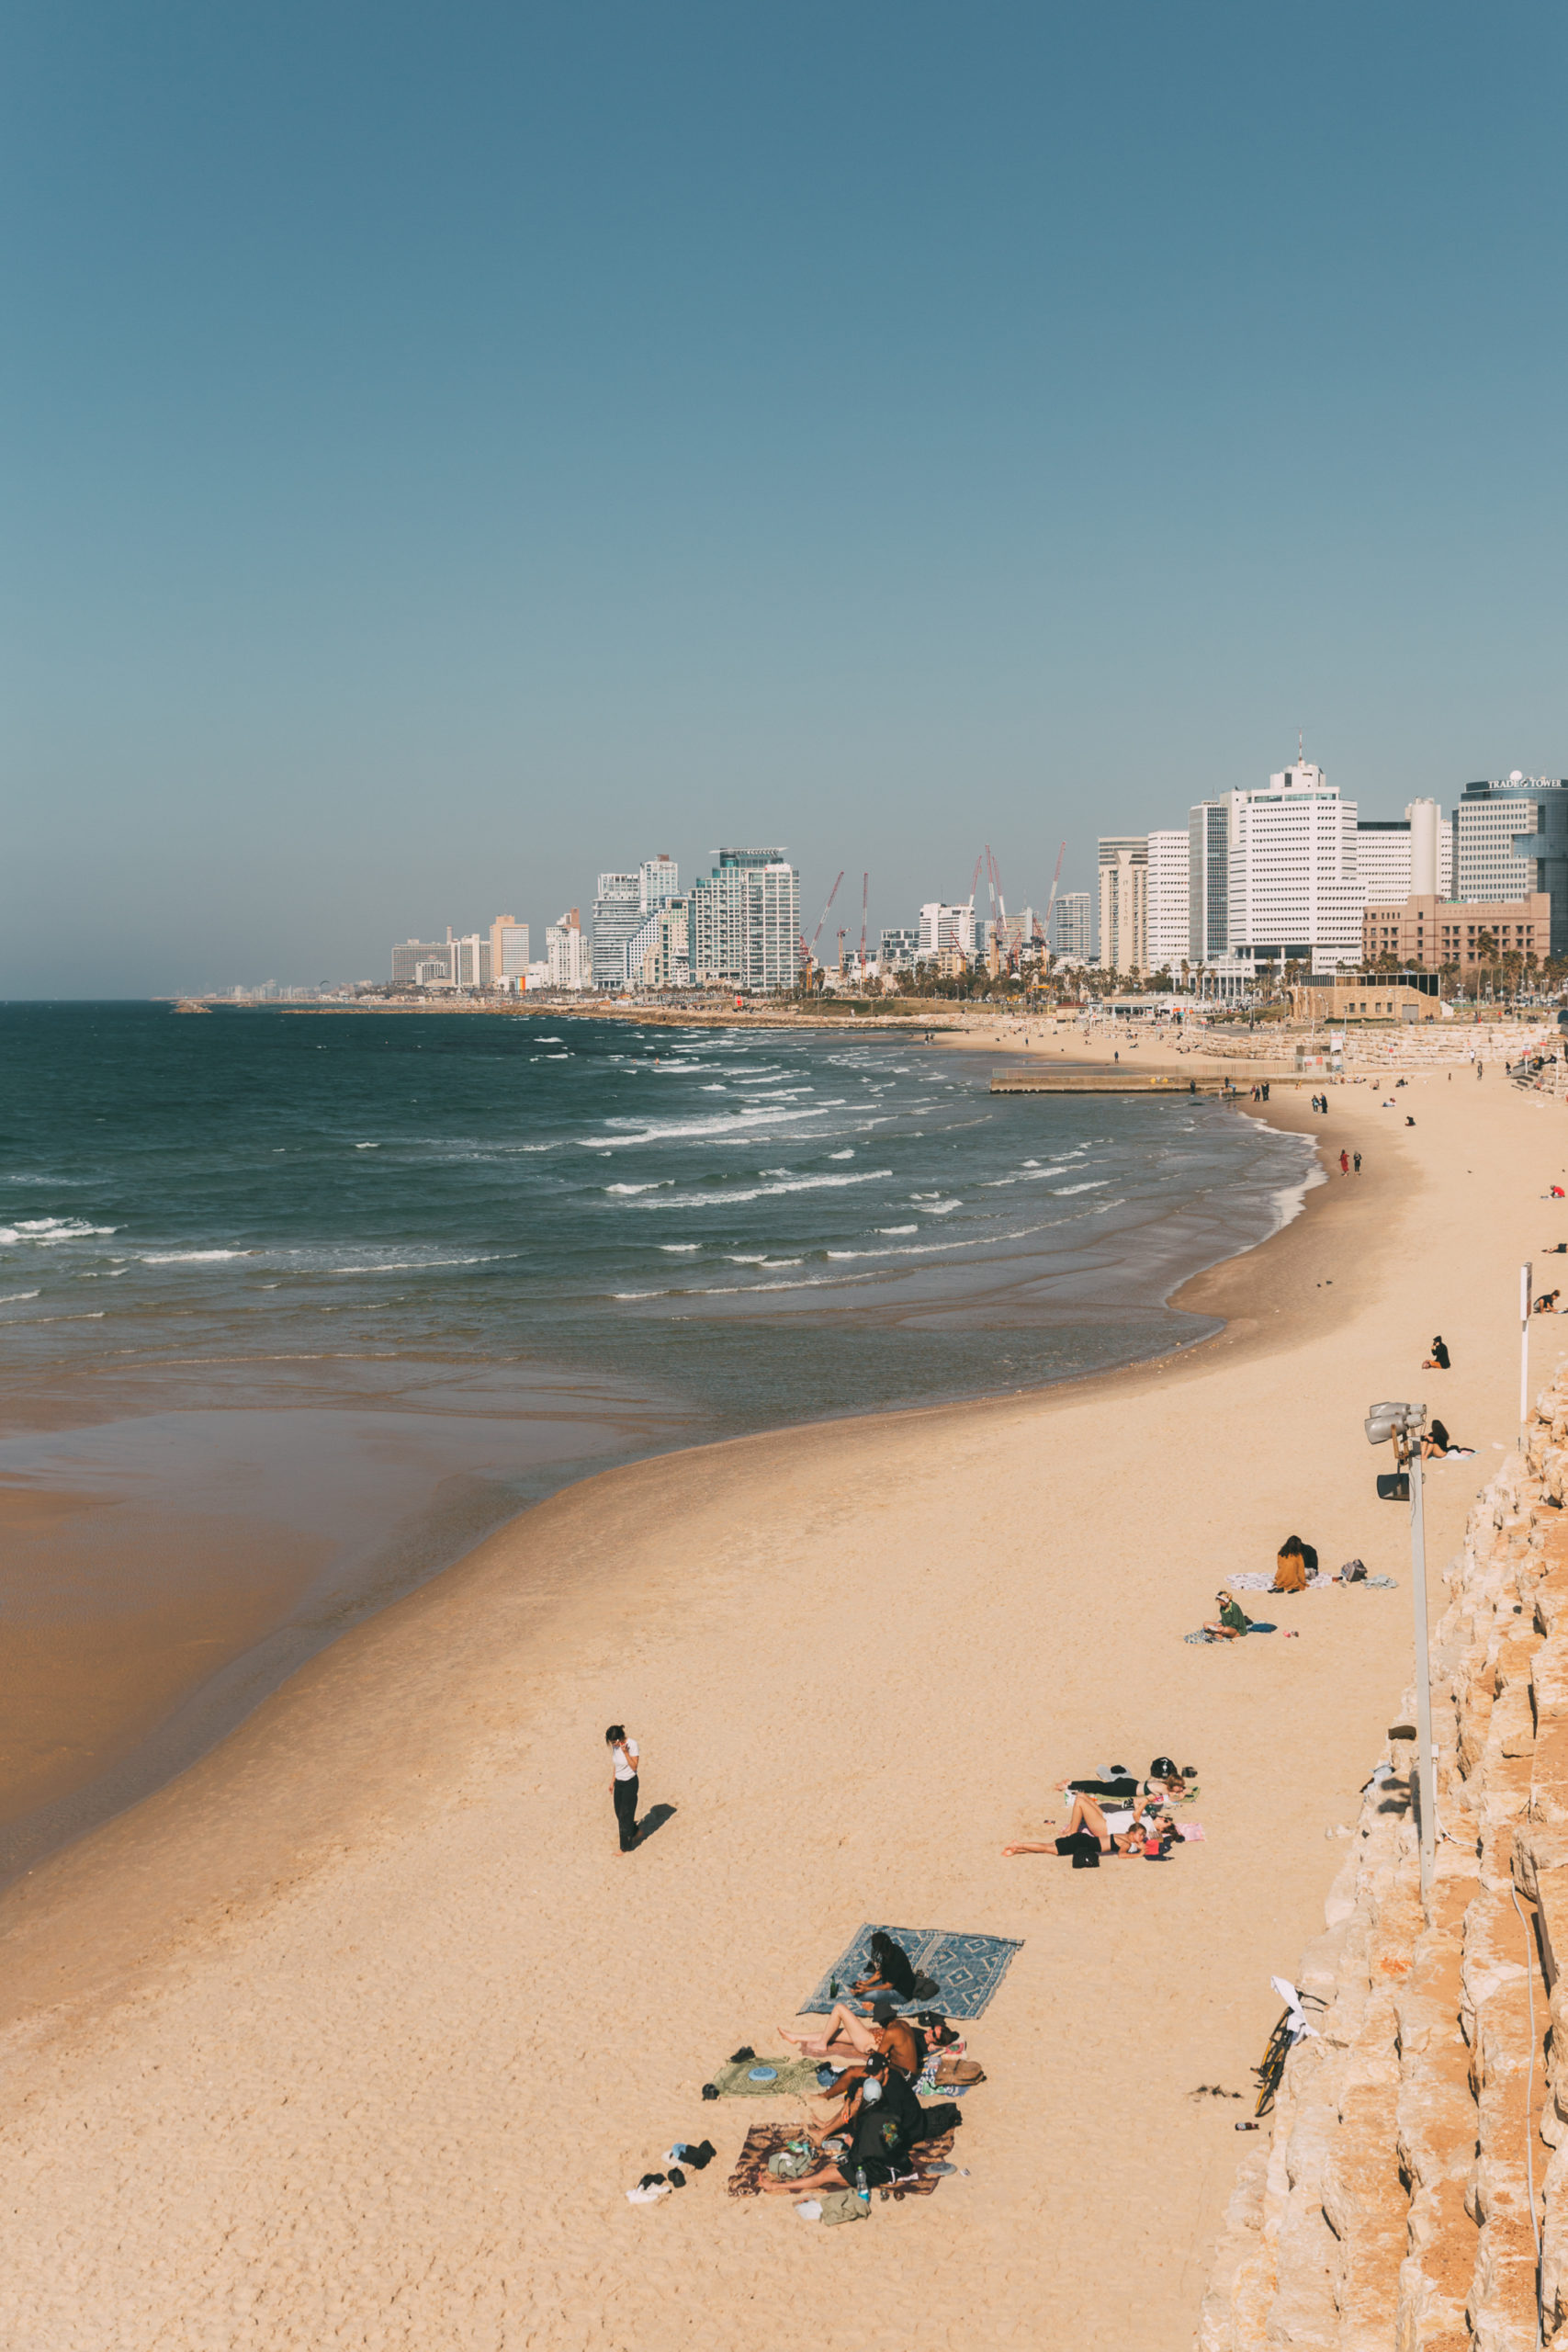 My Solo trip to Tel Aviv